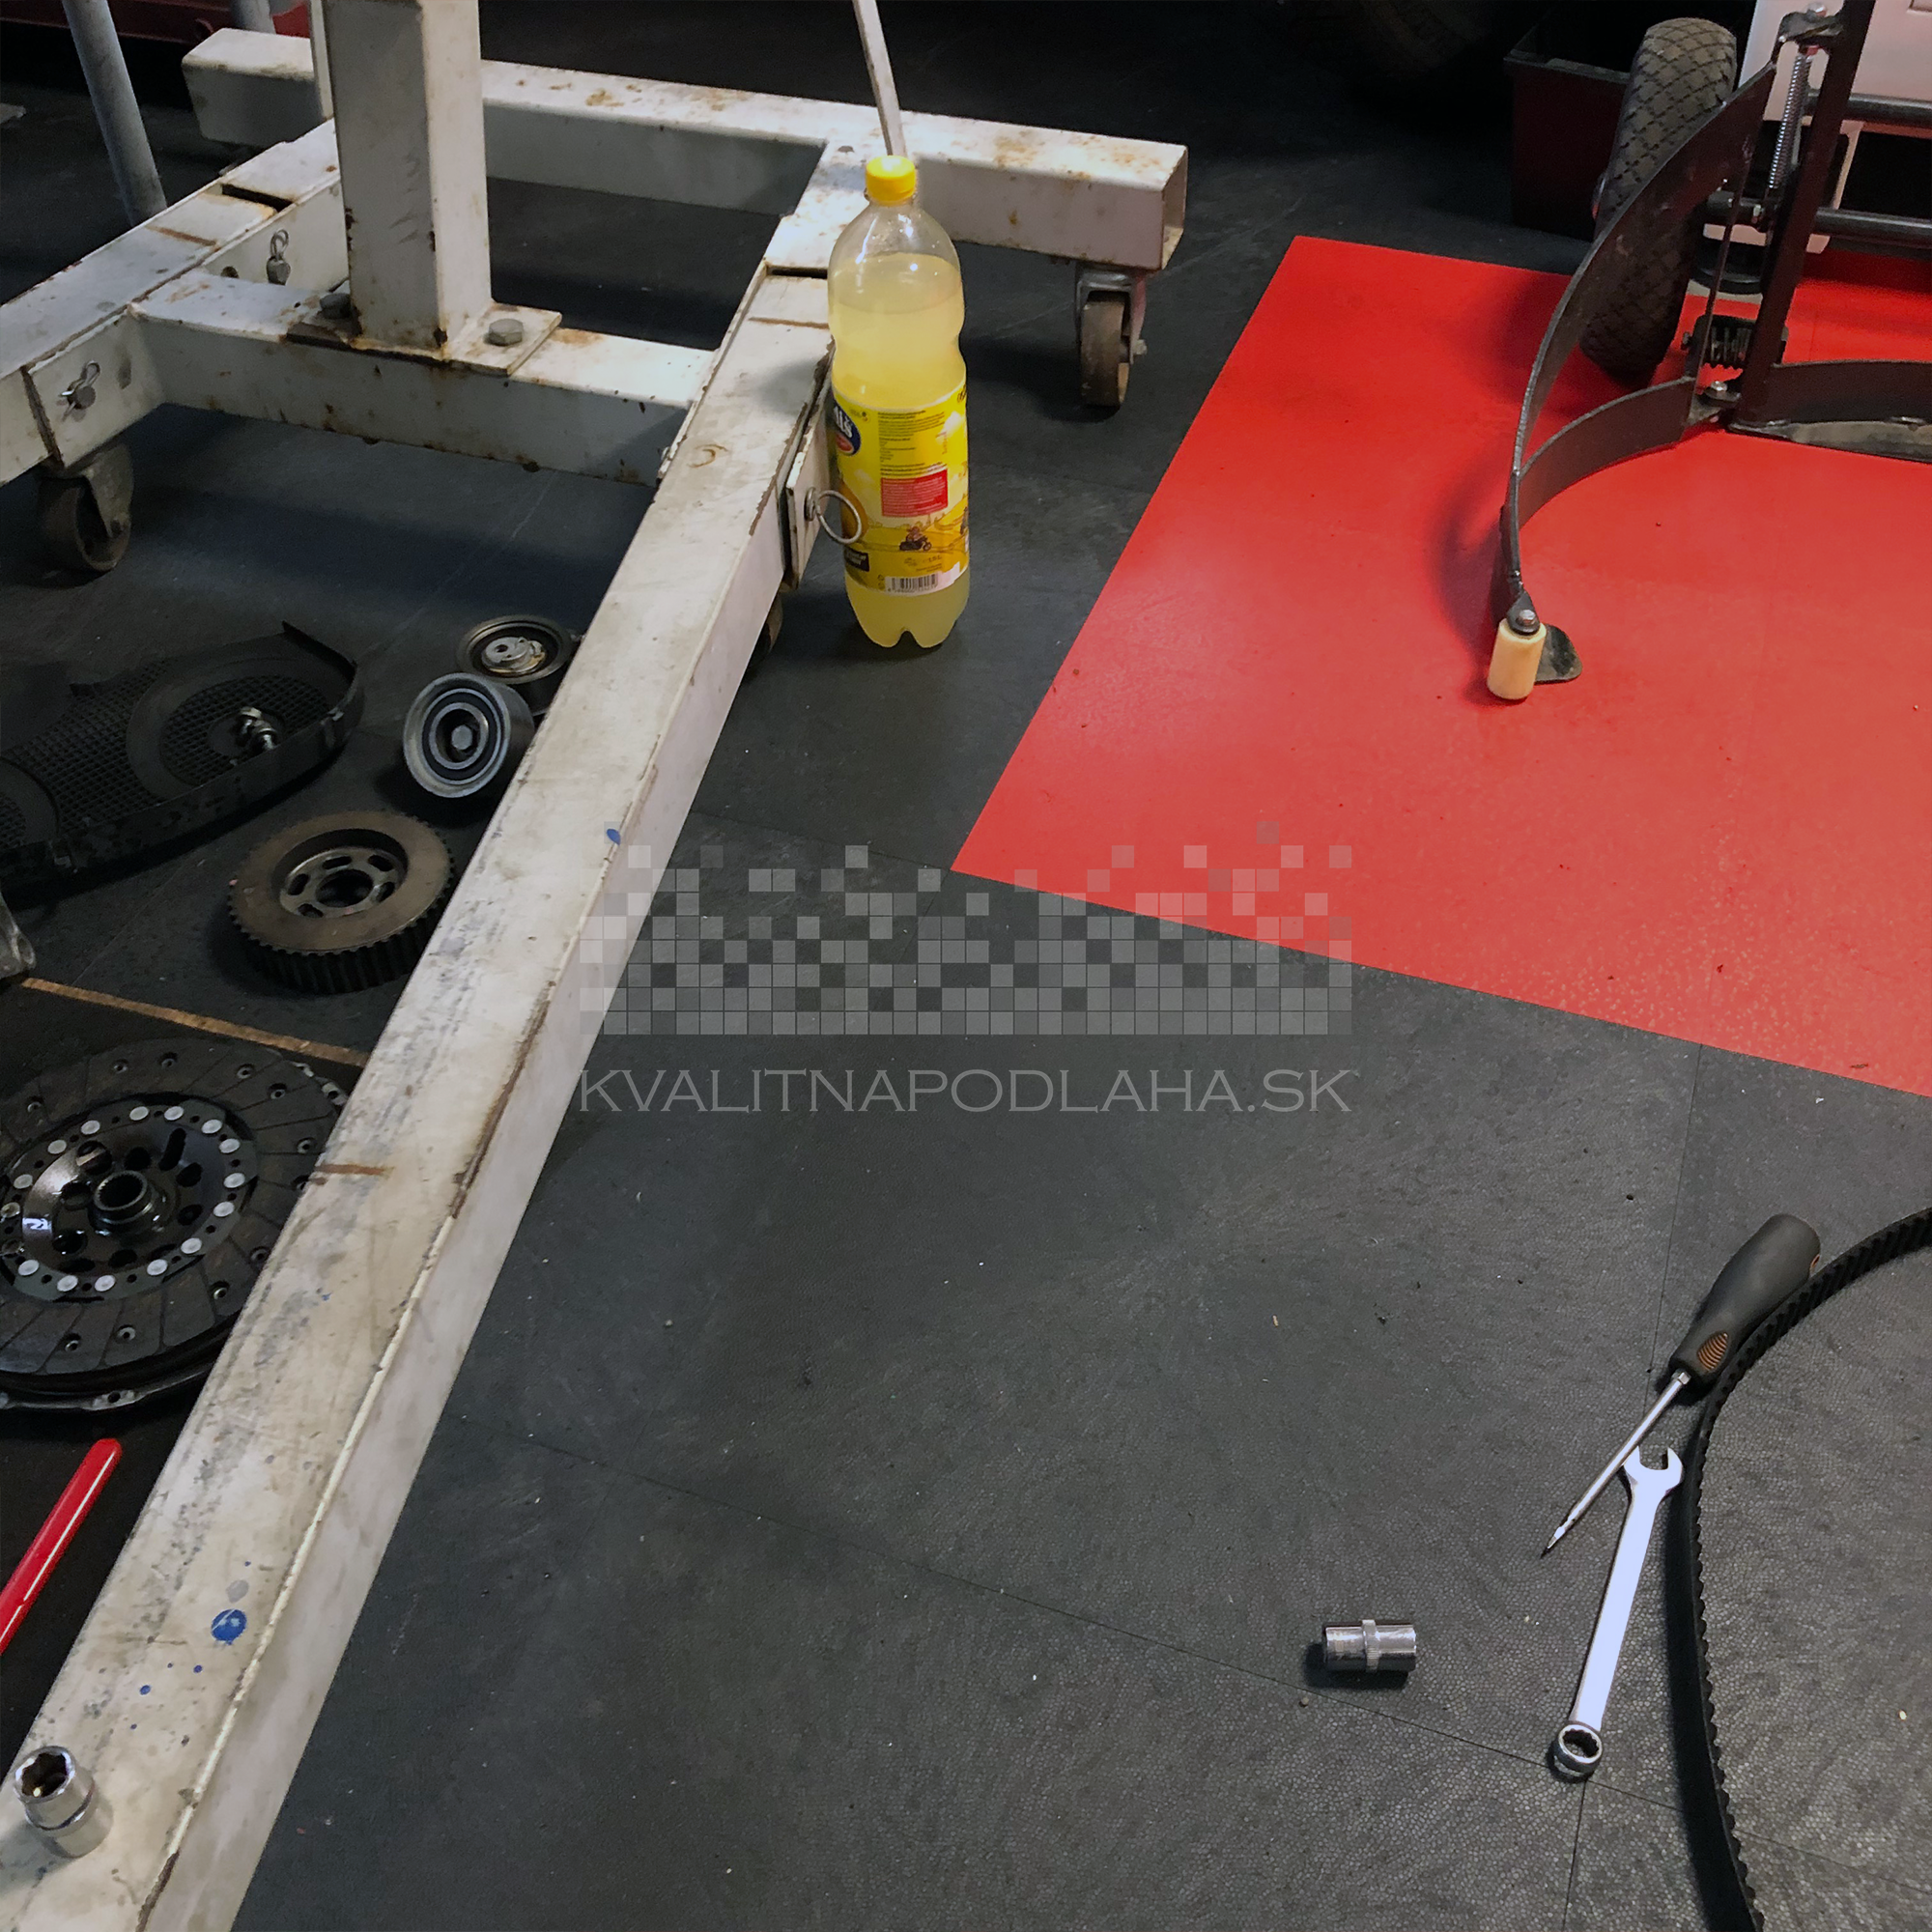 Odolná záťažová PVC podlaha Fortelock Invisible so skrytými zámkami v auto dielni.